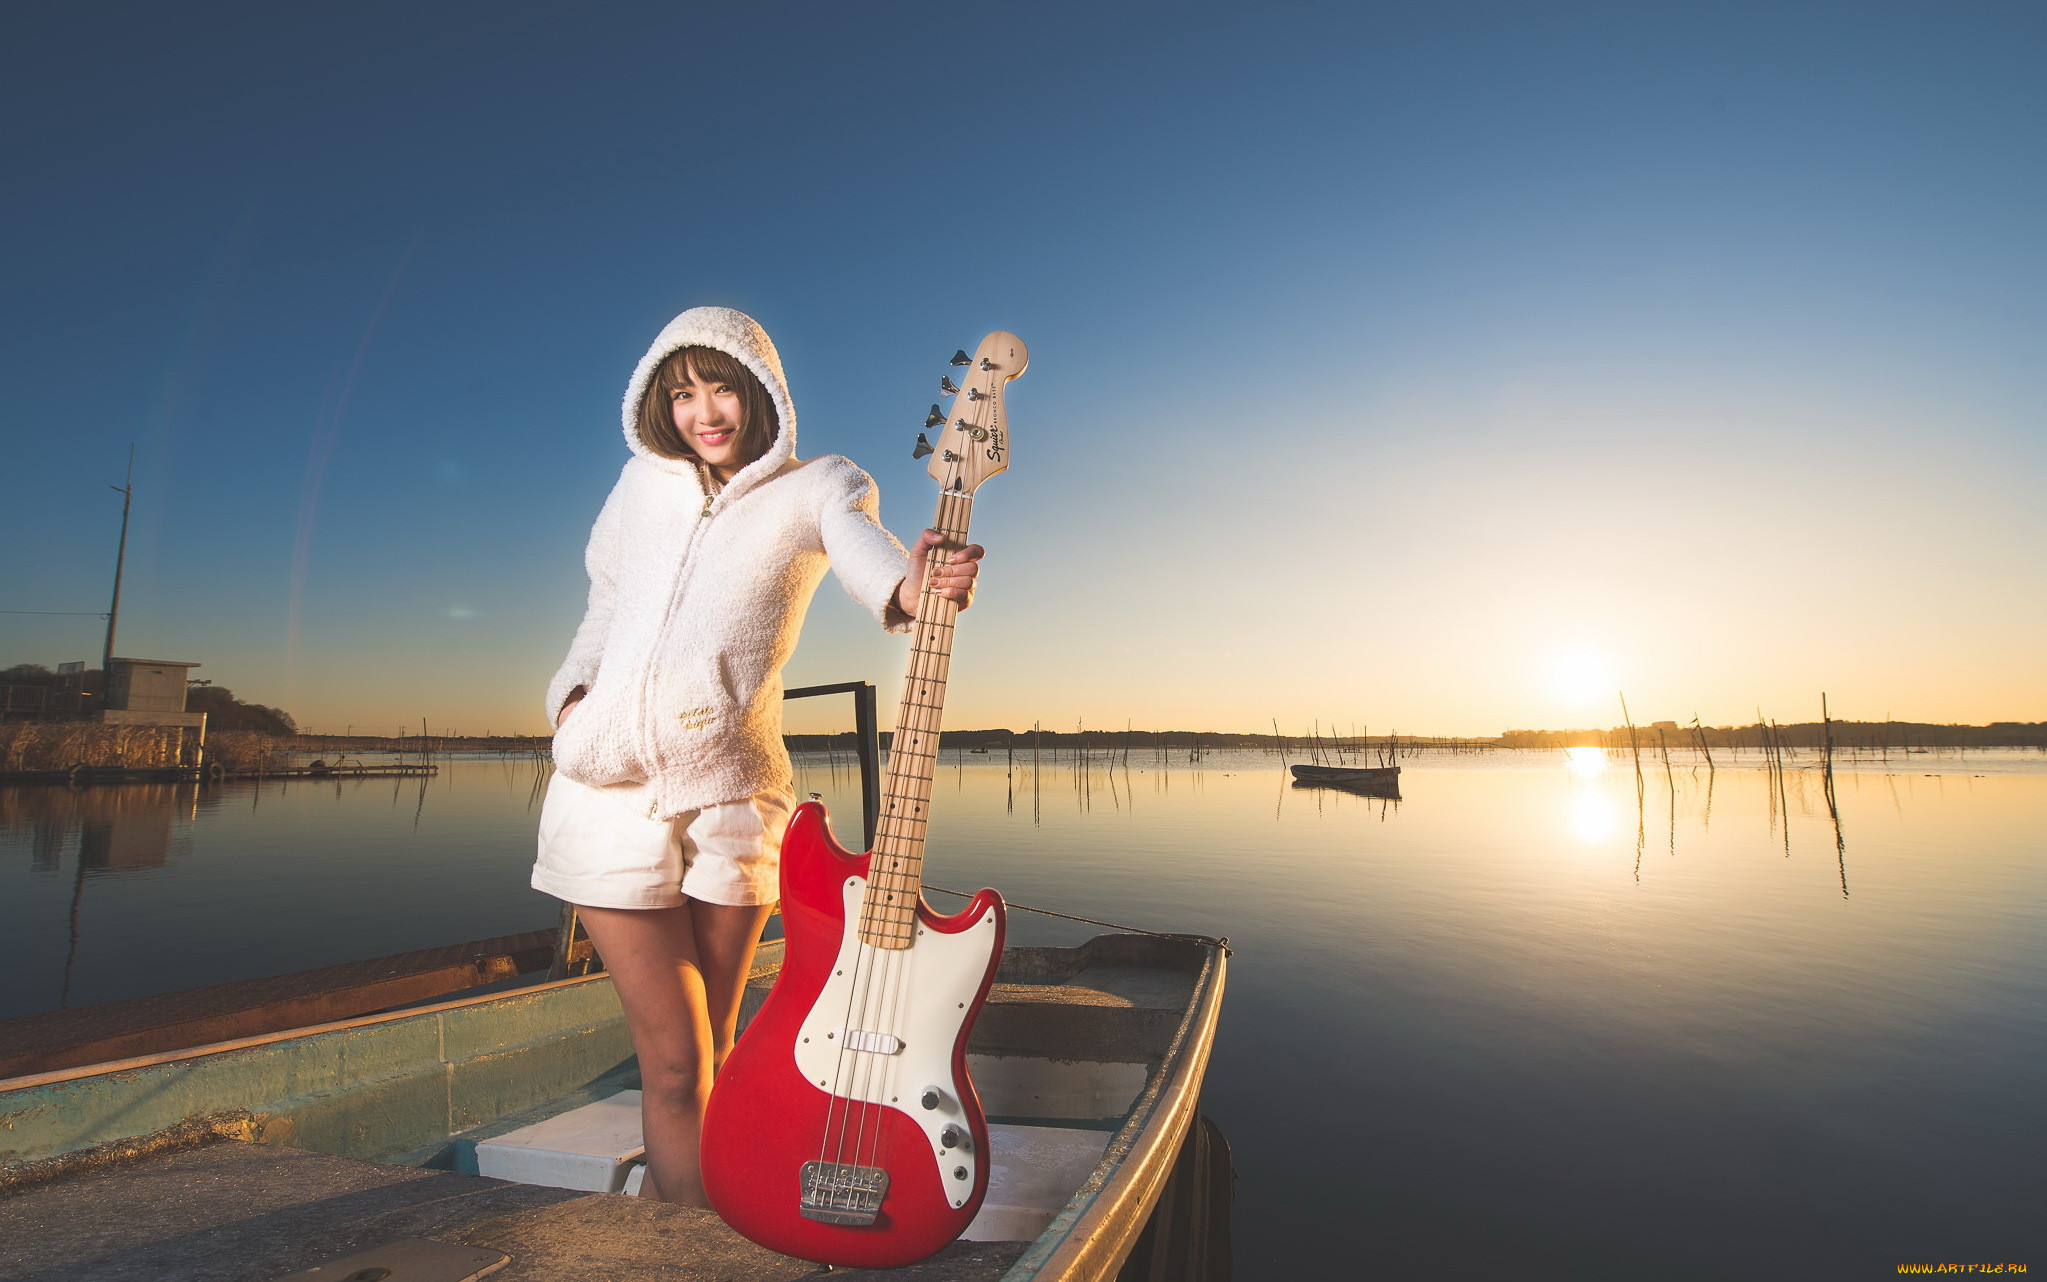 Музыка гитару mp3. Девушка с электрогитарой. Девушка с гитарой у моря. Фотосессия с гитарой в студии. Море девица с гитарой.